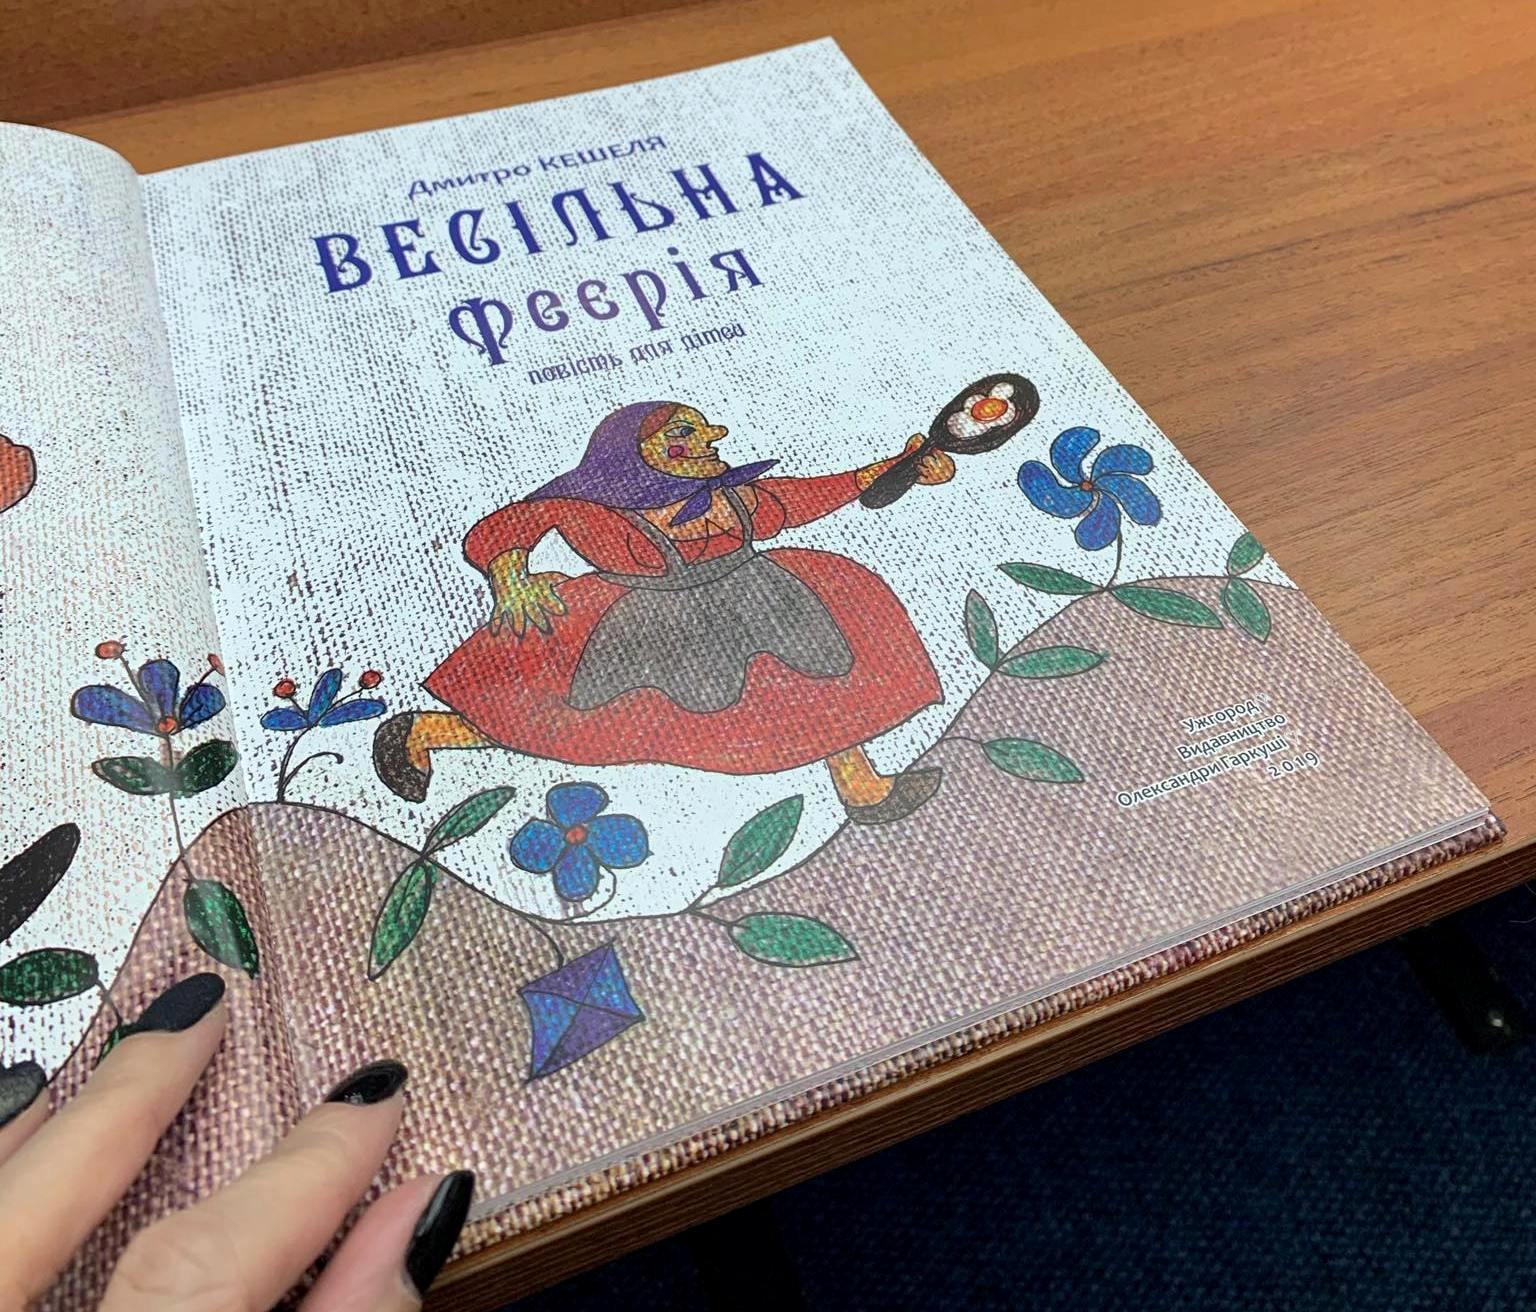 В Ужгороді презентували книгу Дмитра Кешелі "Весільна феєрія" (ФОТО)